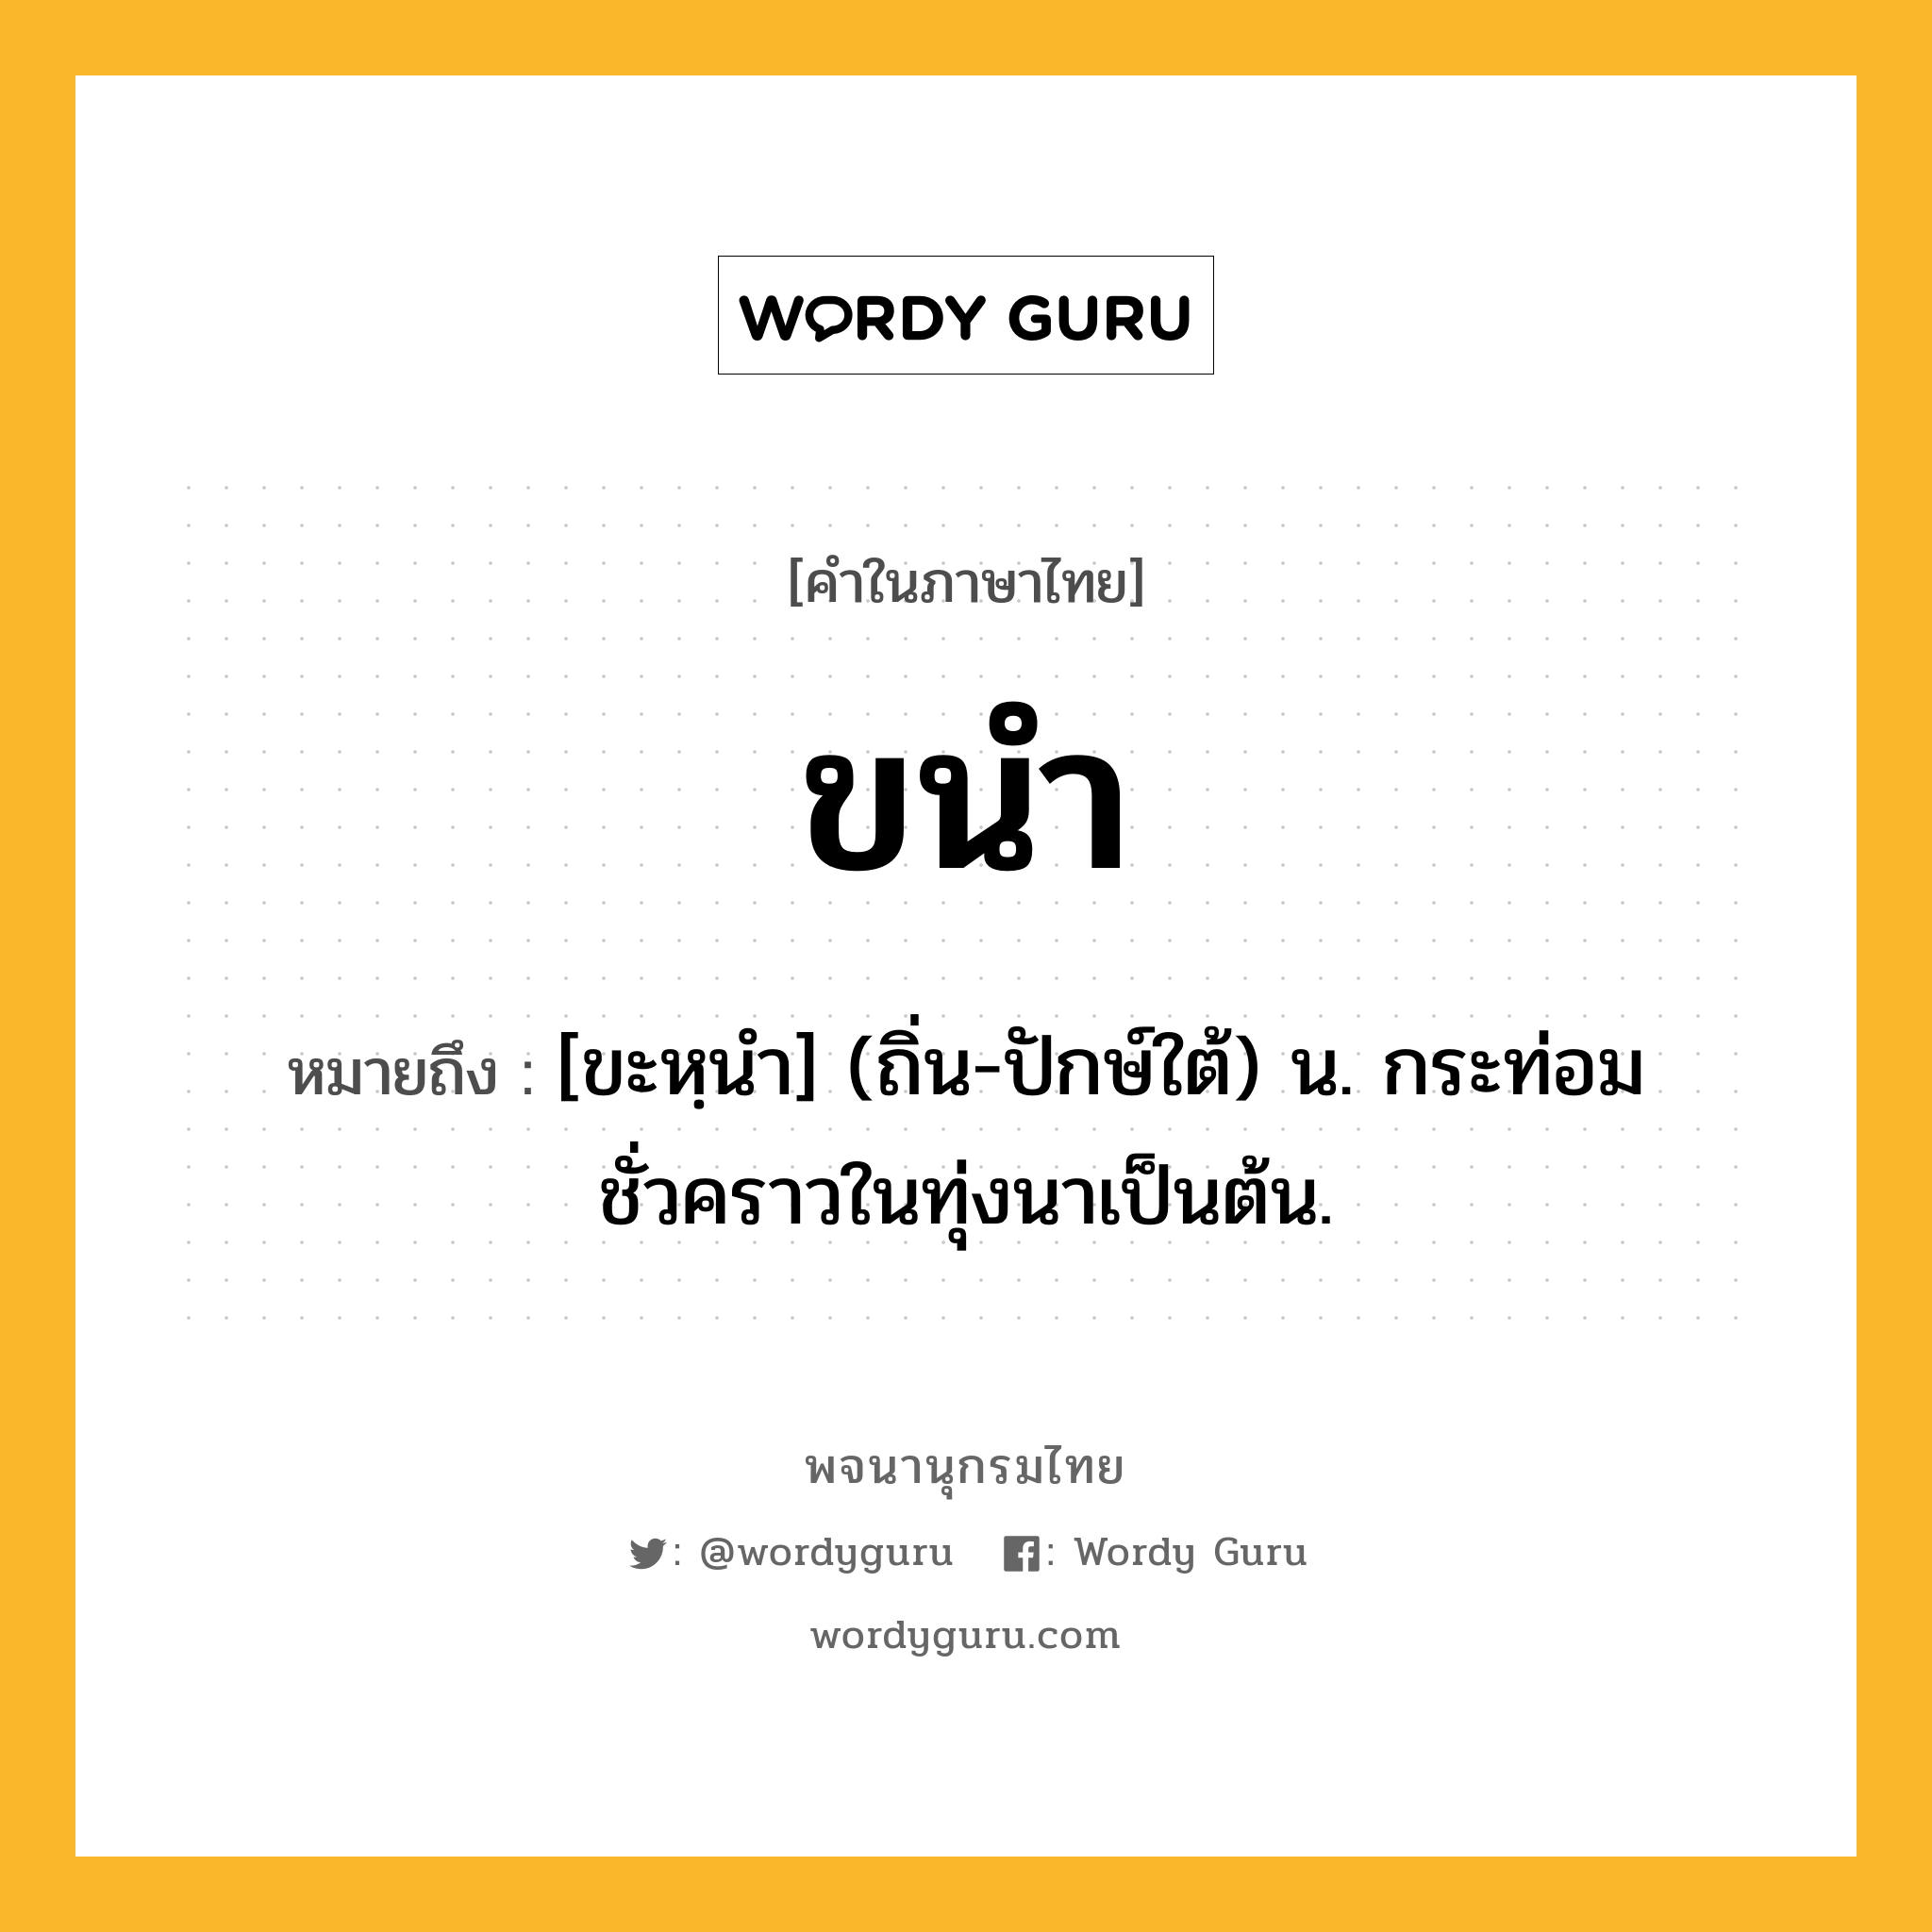 ขนำ ความหมาย หมายถึงอะไร?, คำในภาษาไทย ขนำ หมายถึง [ขะหฺนํา] (ถิ่น-ปักษ์ใต้) น. กระท่อมชั่วคราวในทุ่งนาเป็นต้น.